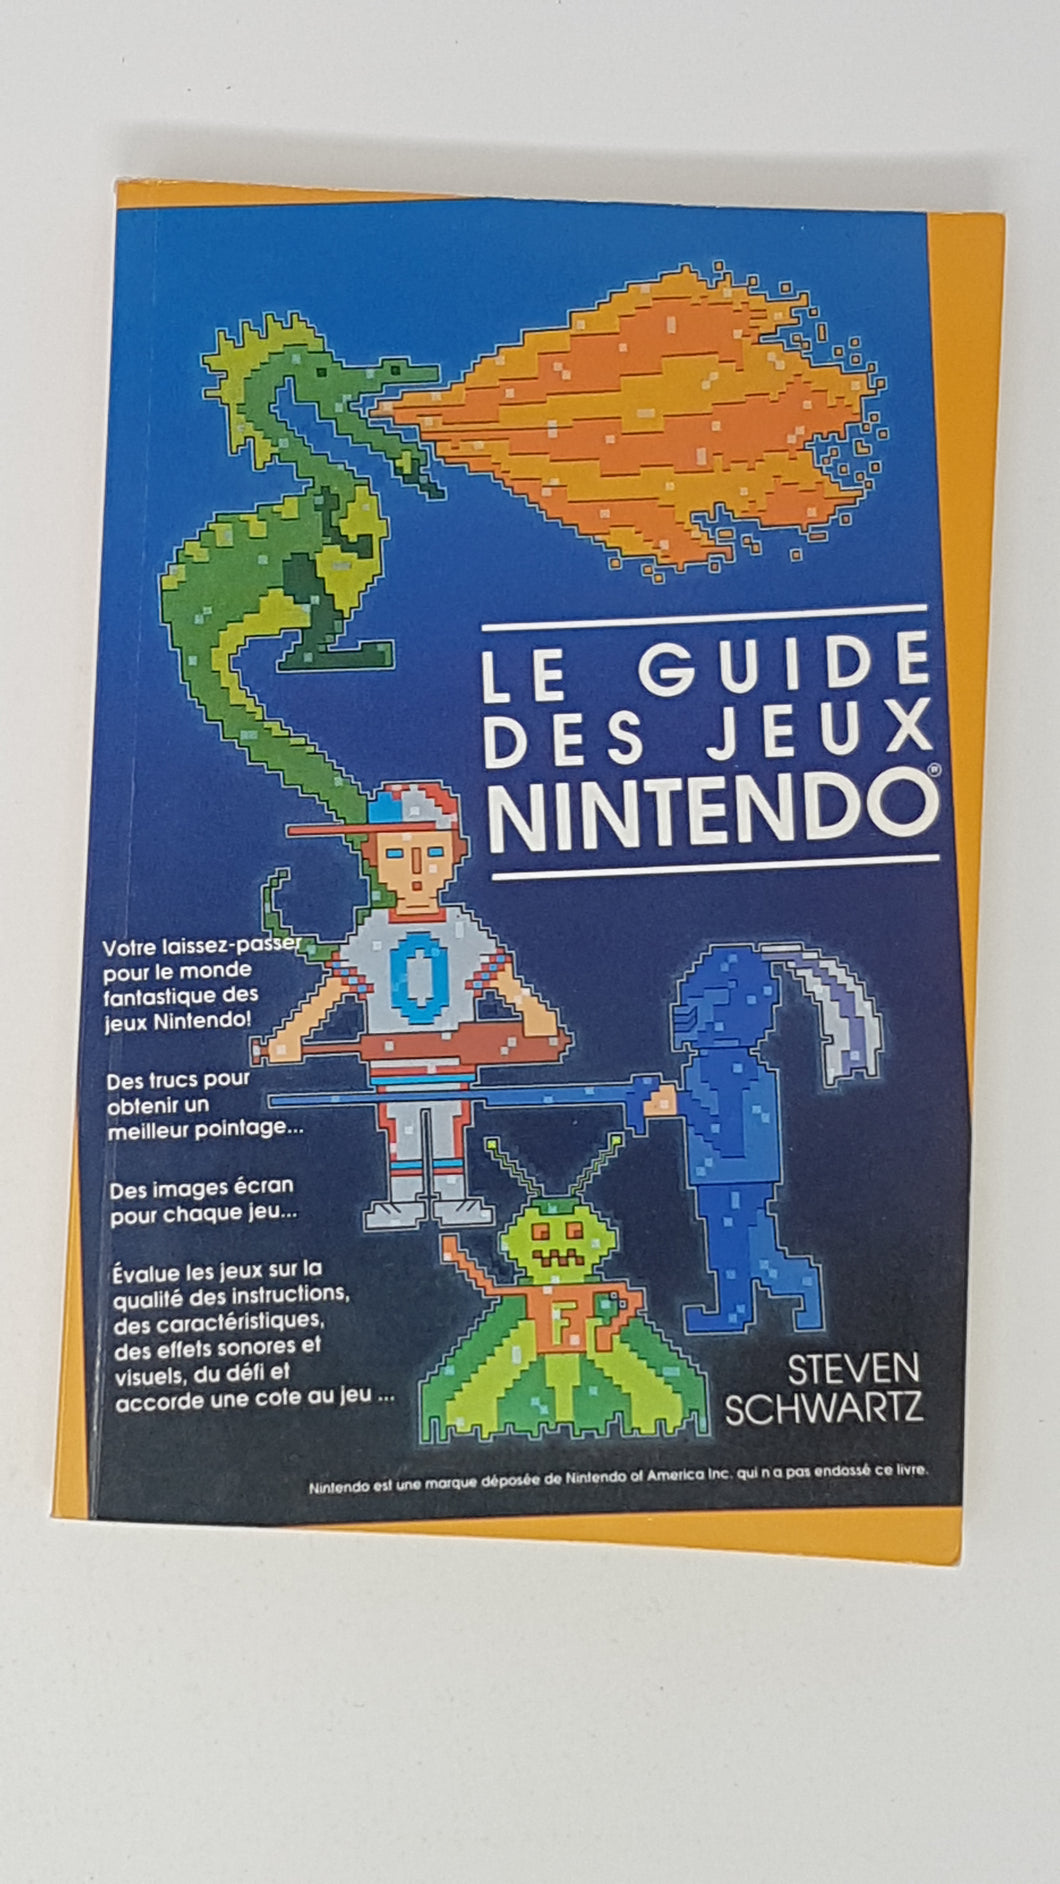 Le Guide des Jeux Nintendo [Steven Schwartz] - Strategy Guide